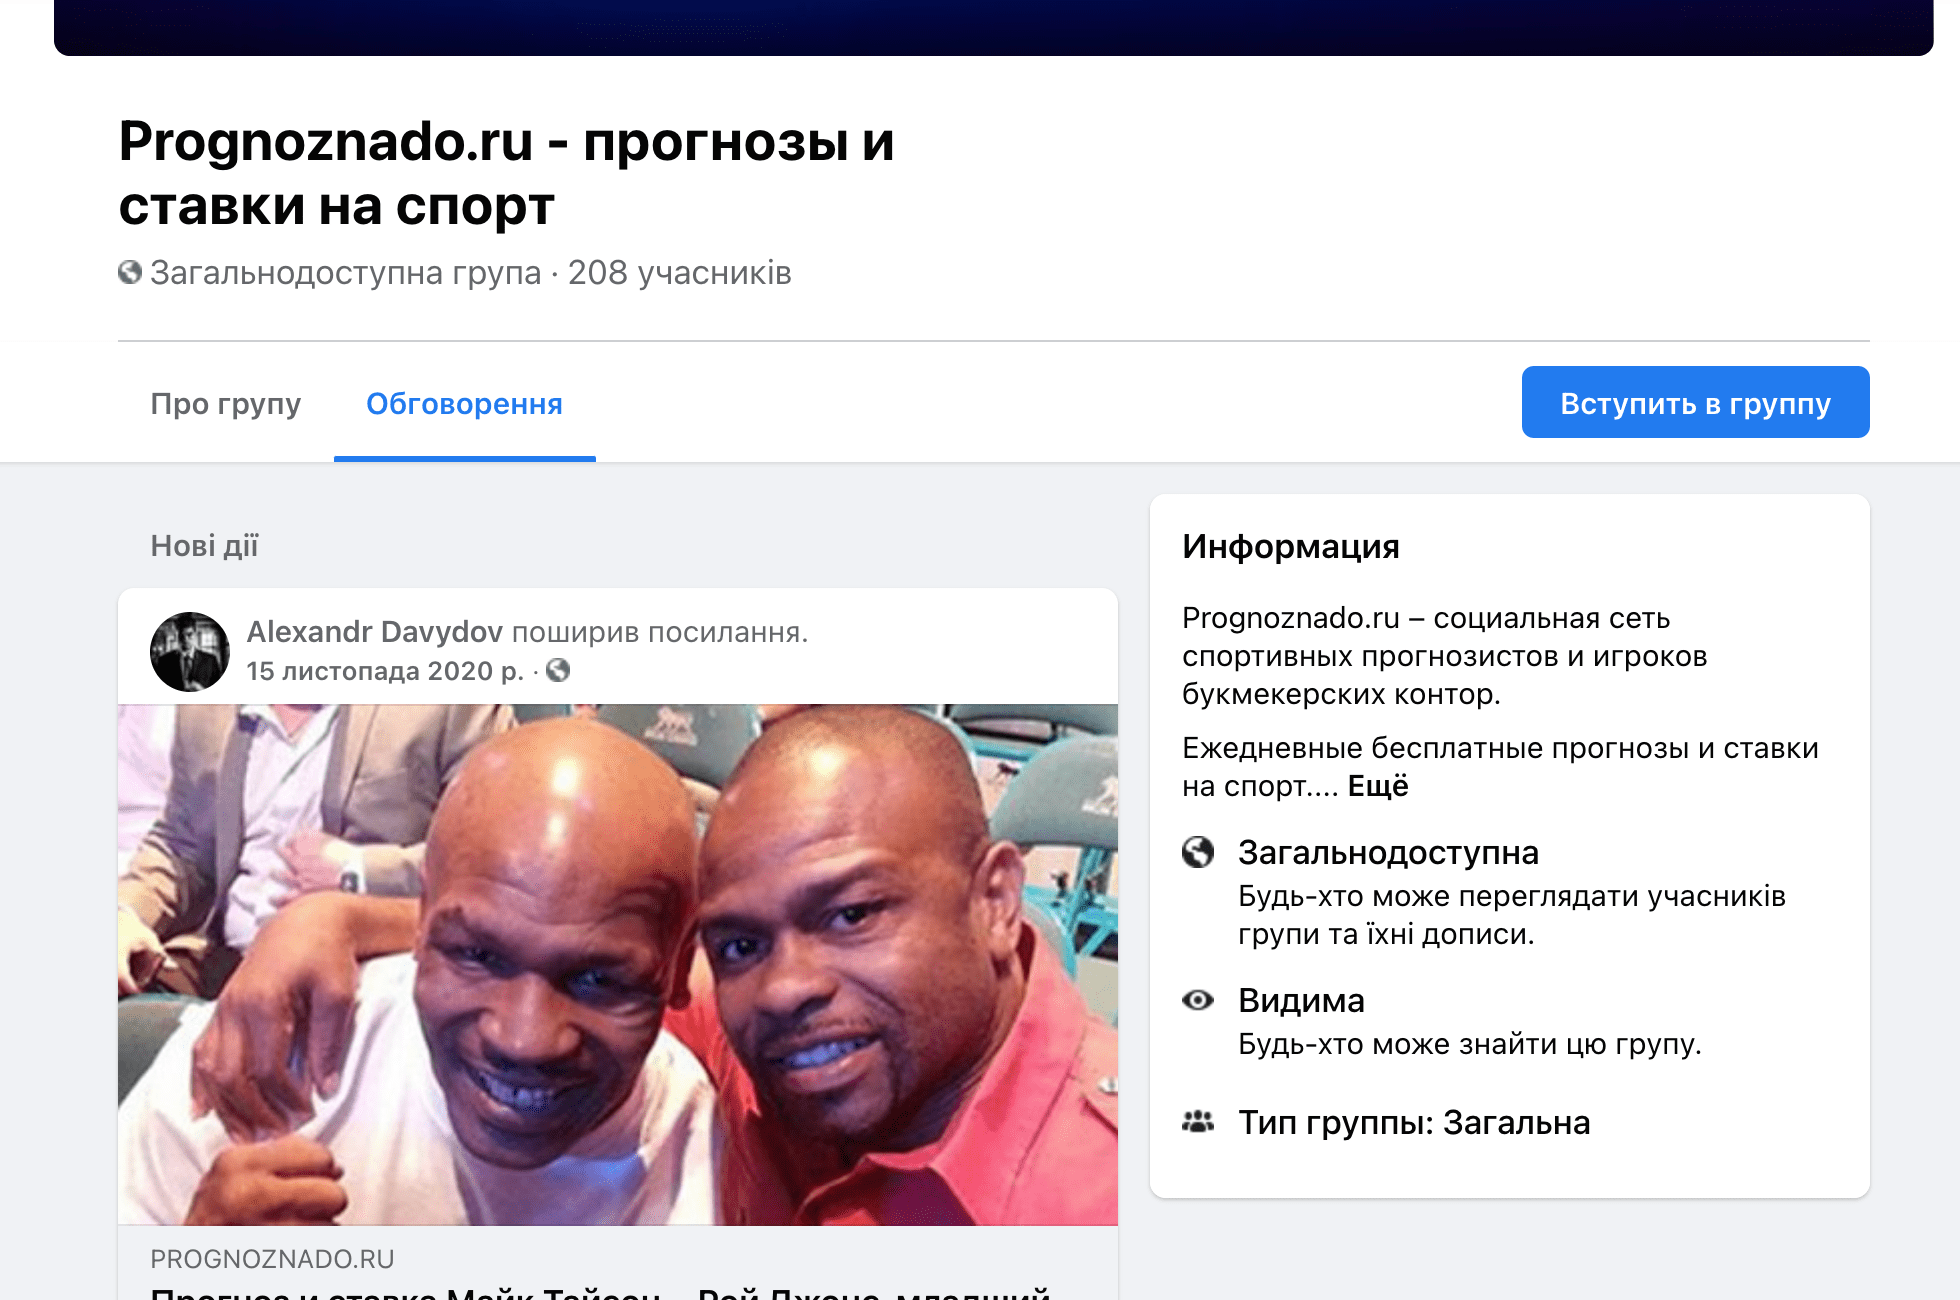 Фейсбук Prognoznado ru (ПрогнозНадо ру)